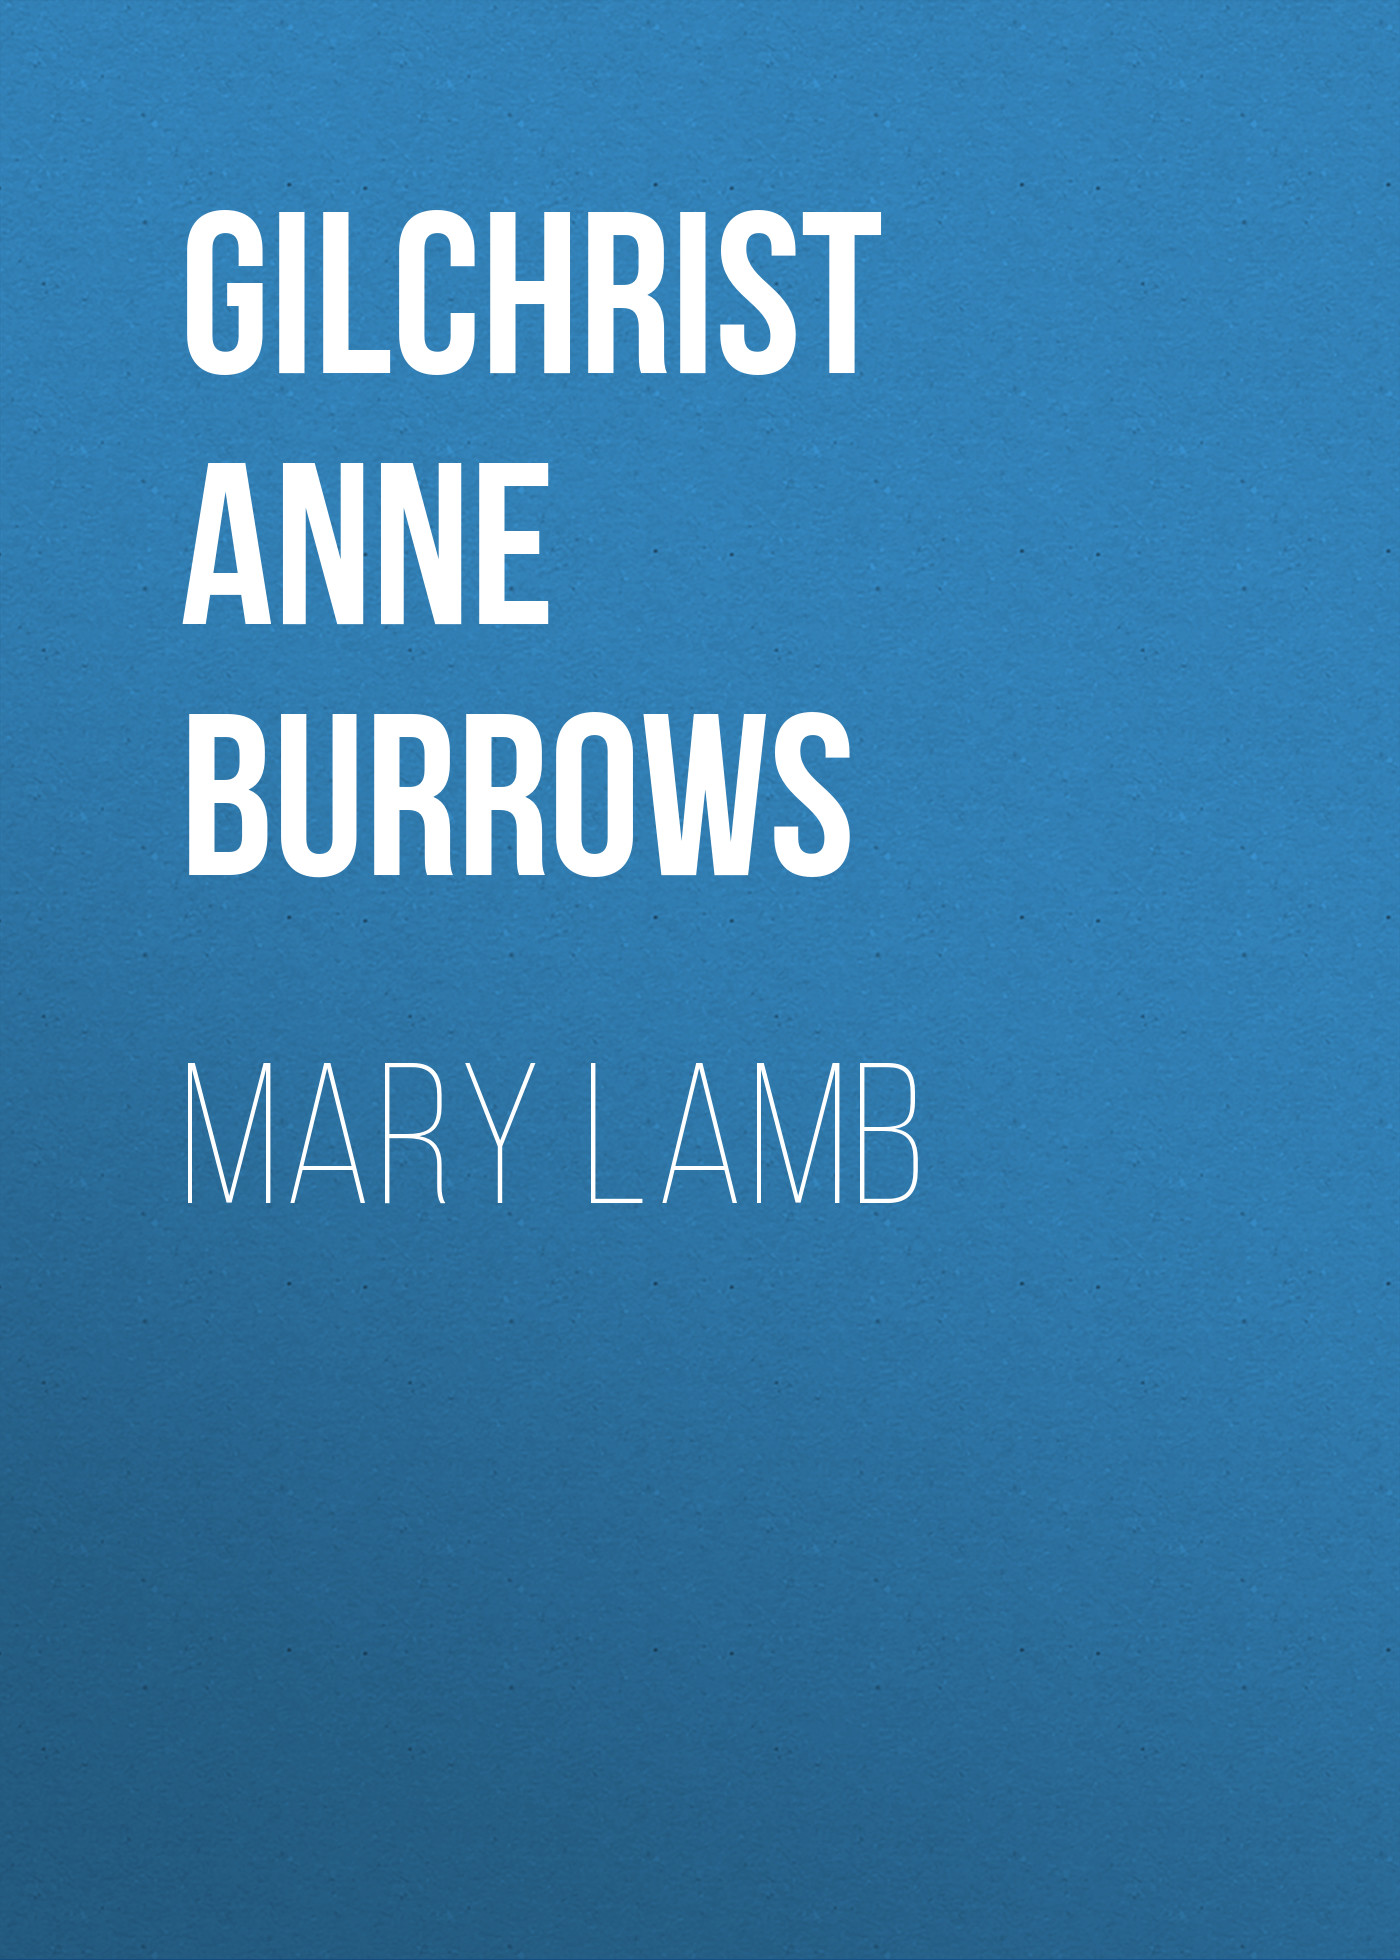 Книга Mary Lamb из серии , созданная Anne Gilchrist, может относится к жанру Зарубежная старинная литература, Зарубежная классика. Стоимость электронной книги Mary Lamb с идентификатором 24936933 составляет 0 руб.